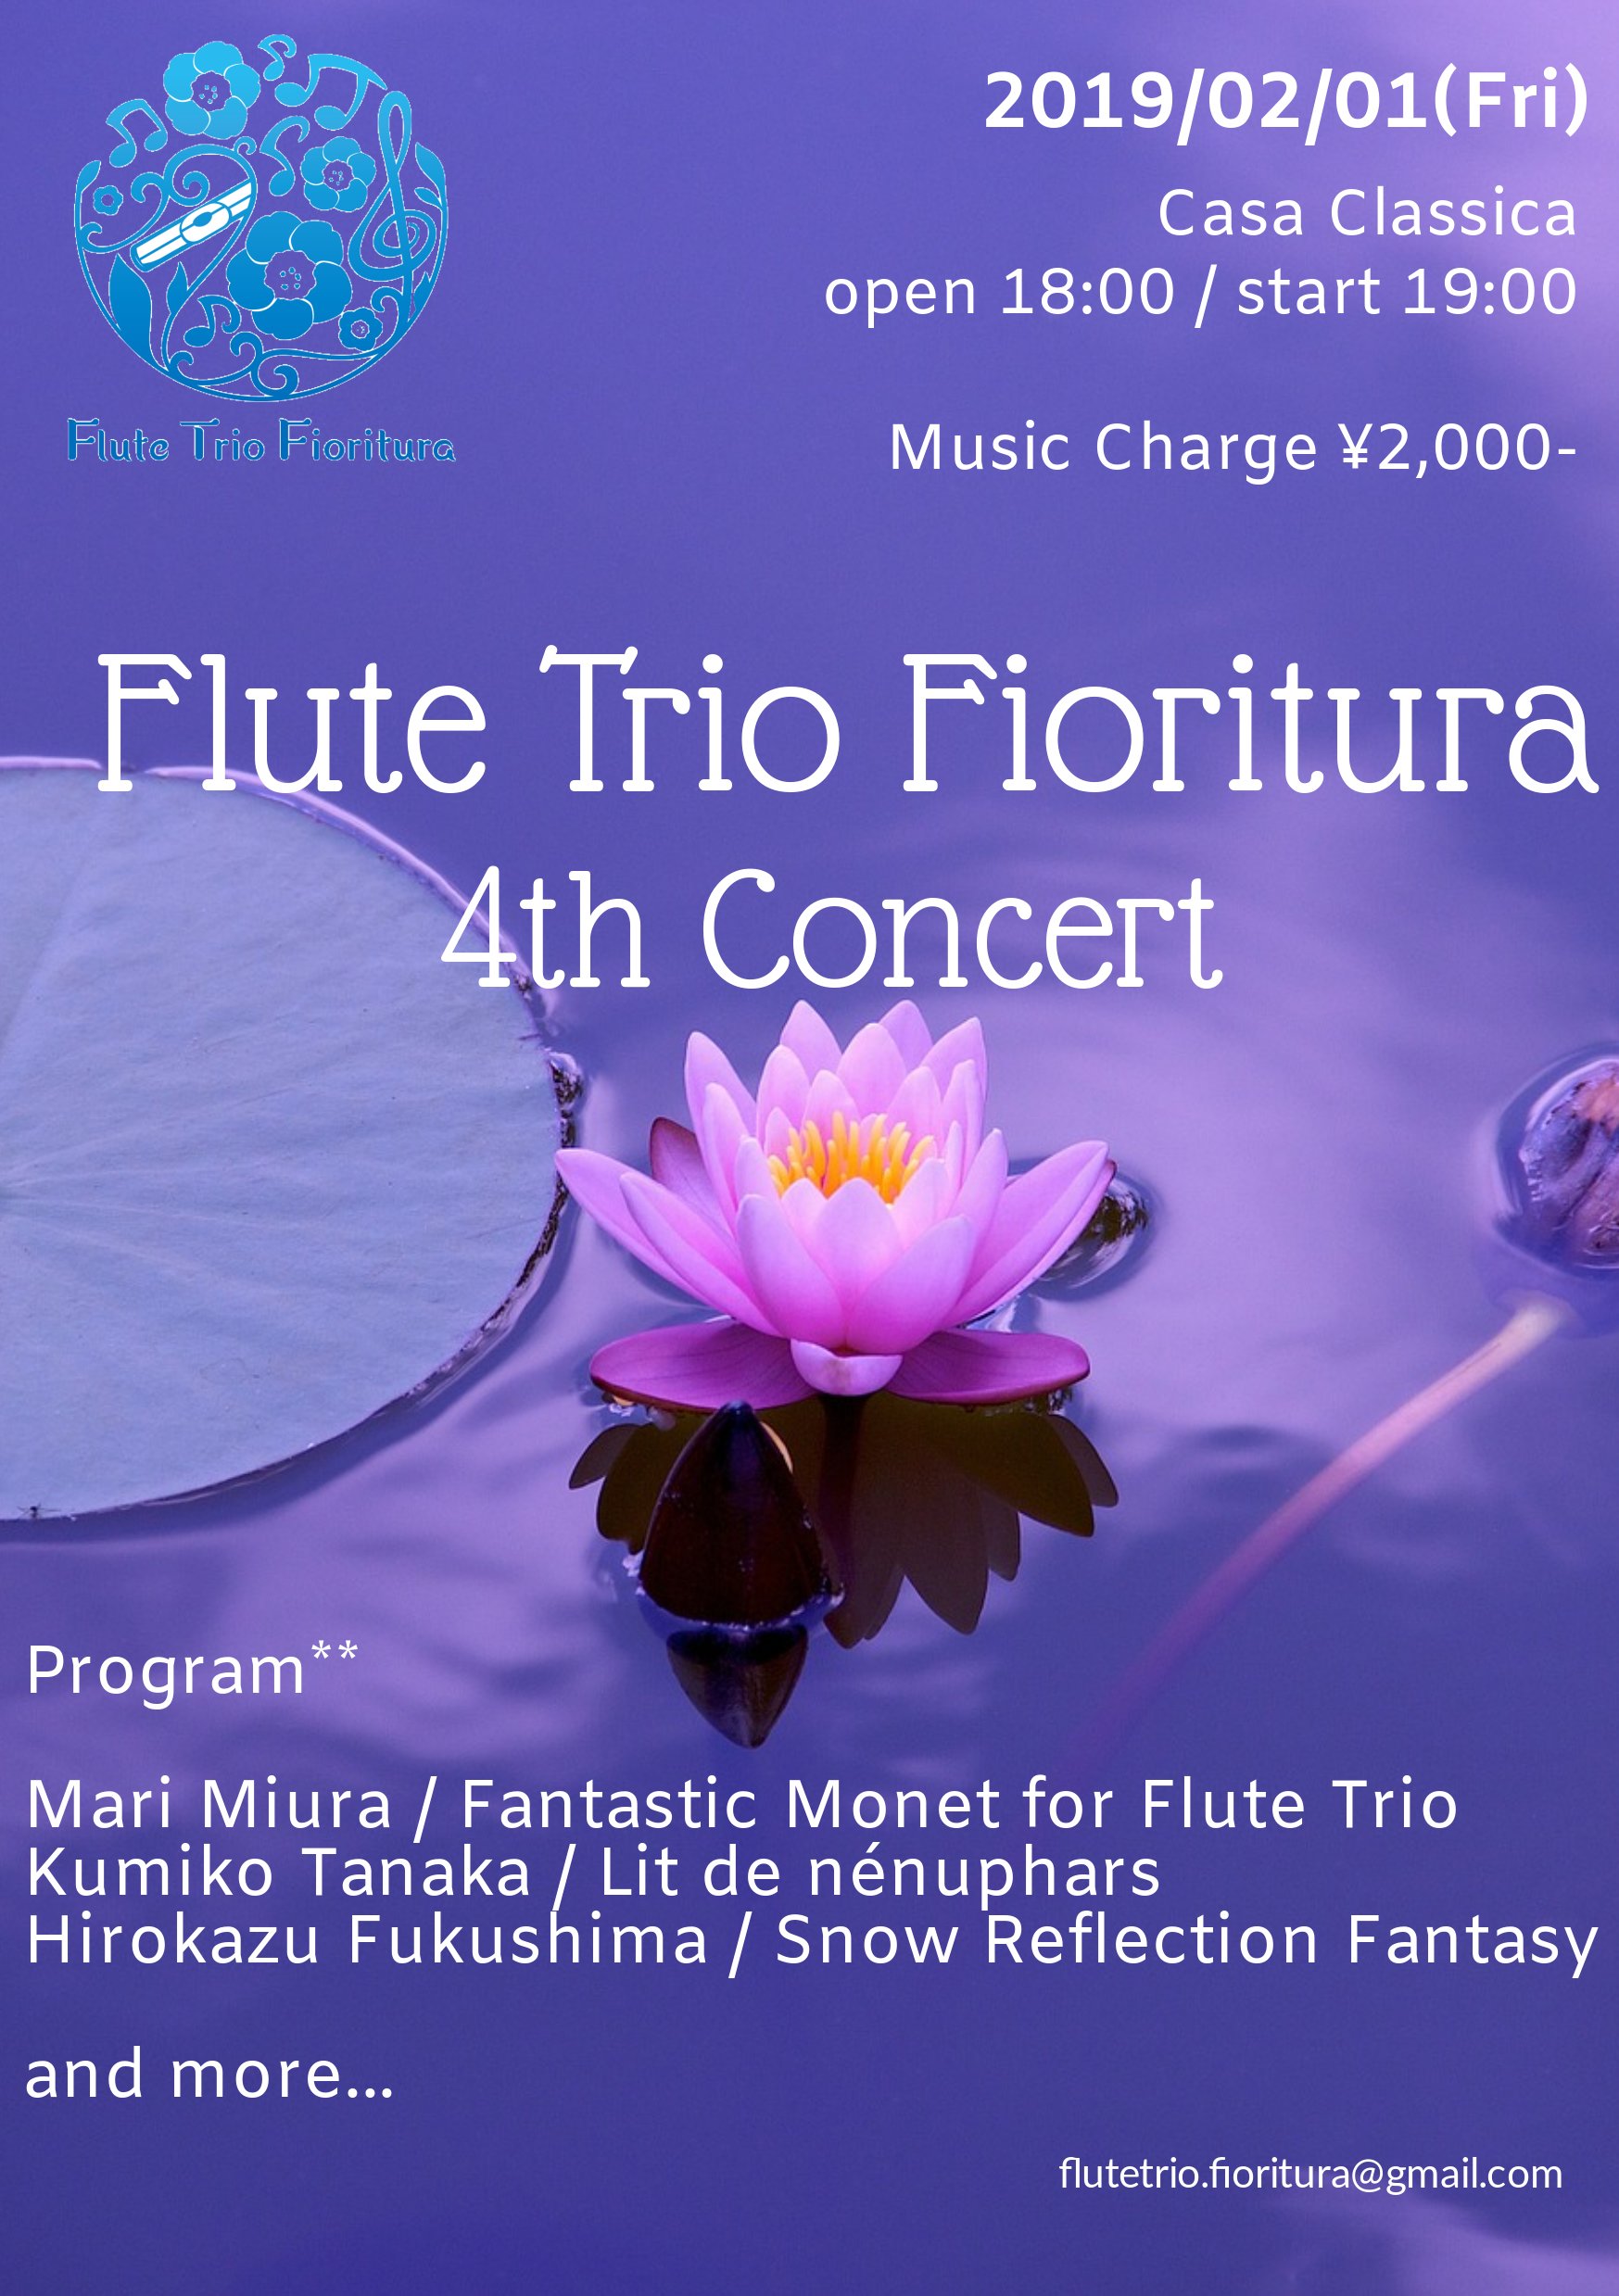 Flute Trio Fioritura